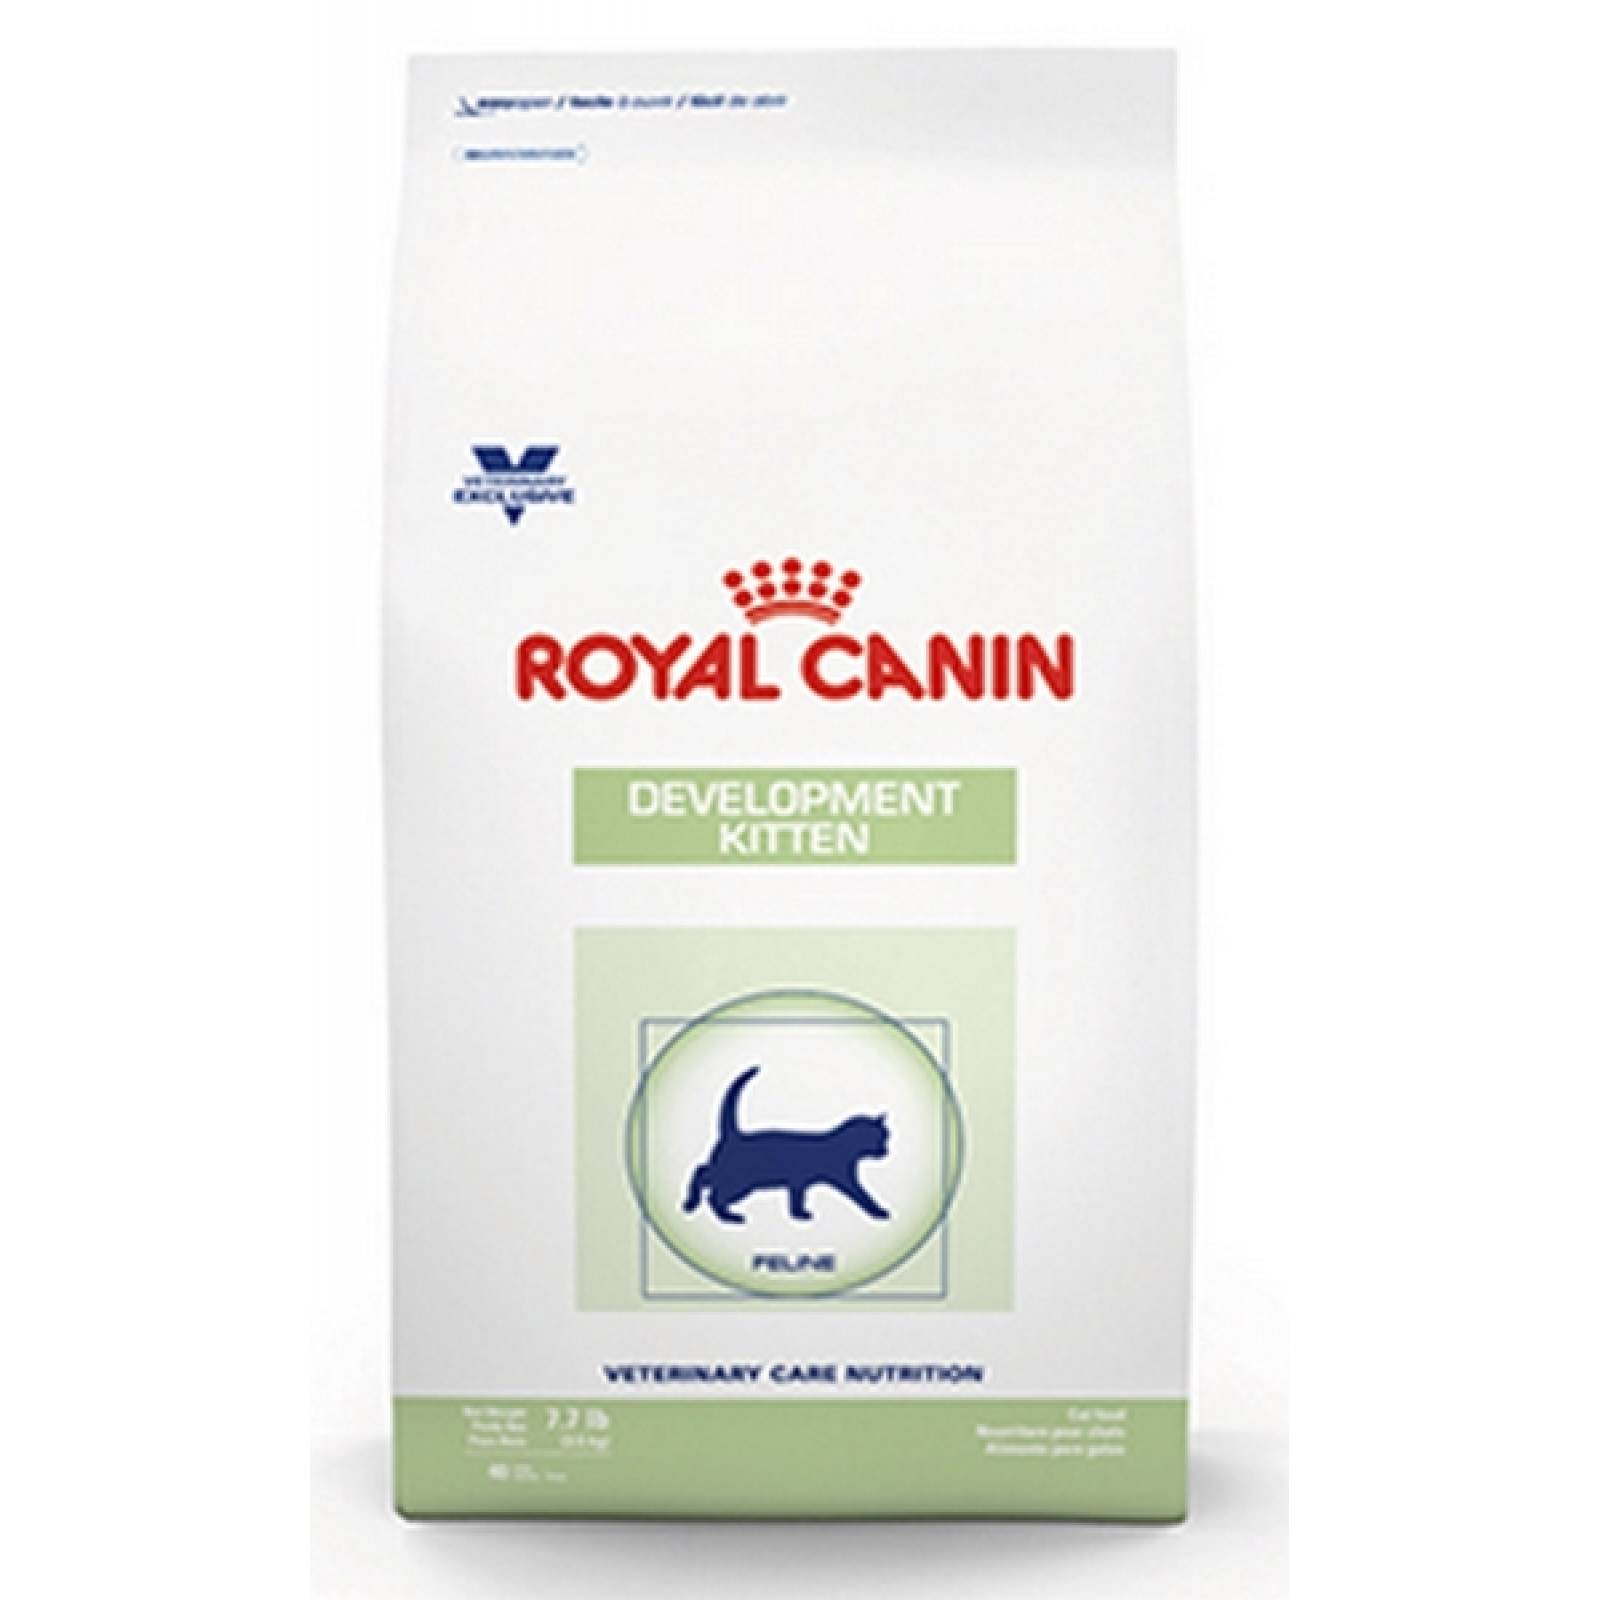 Royal Canin Dieta Veterinaria Alimento para Gatitos en desarrollo 3.5 Kg